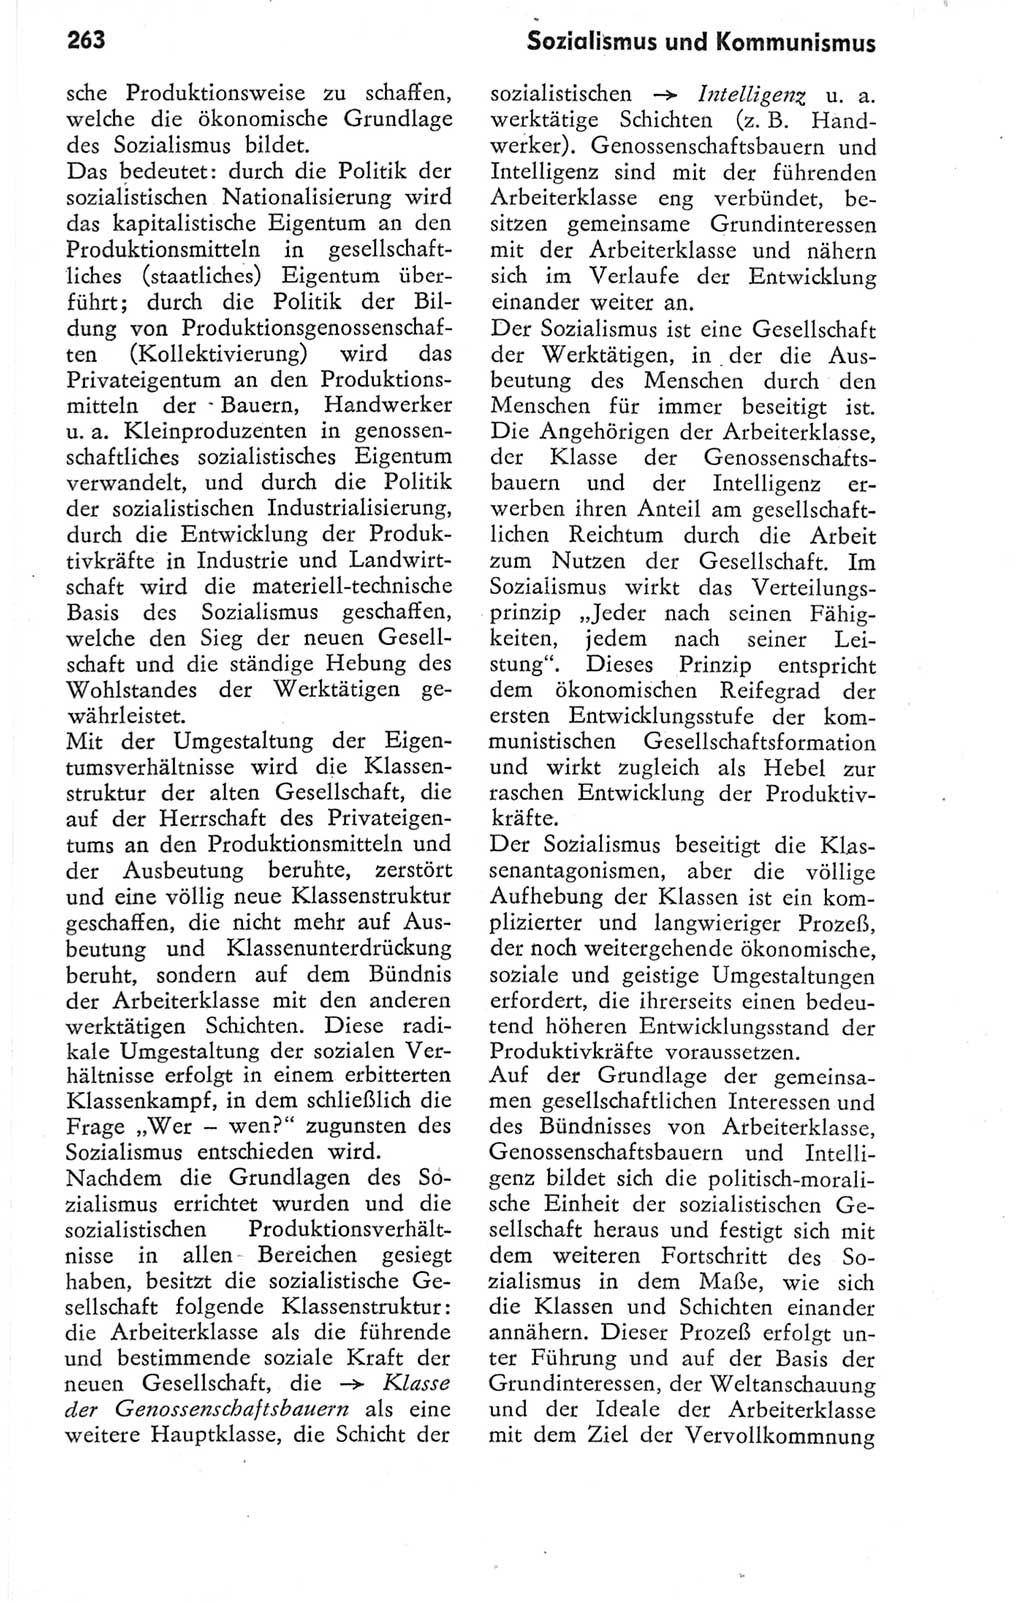 Kleines Wörterbuch der marxistisch-leninistischen Philosophie [Deutsche Demokratische Republik (DDR)] 1974, Seite 263 (Kl. Wb. ML Phil. DDR 1974, S. 263)